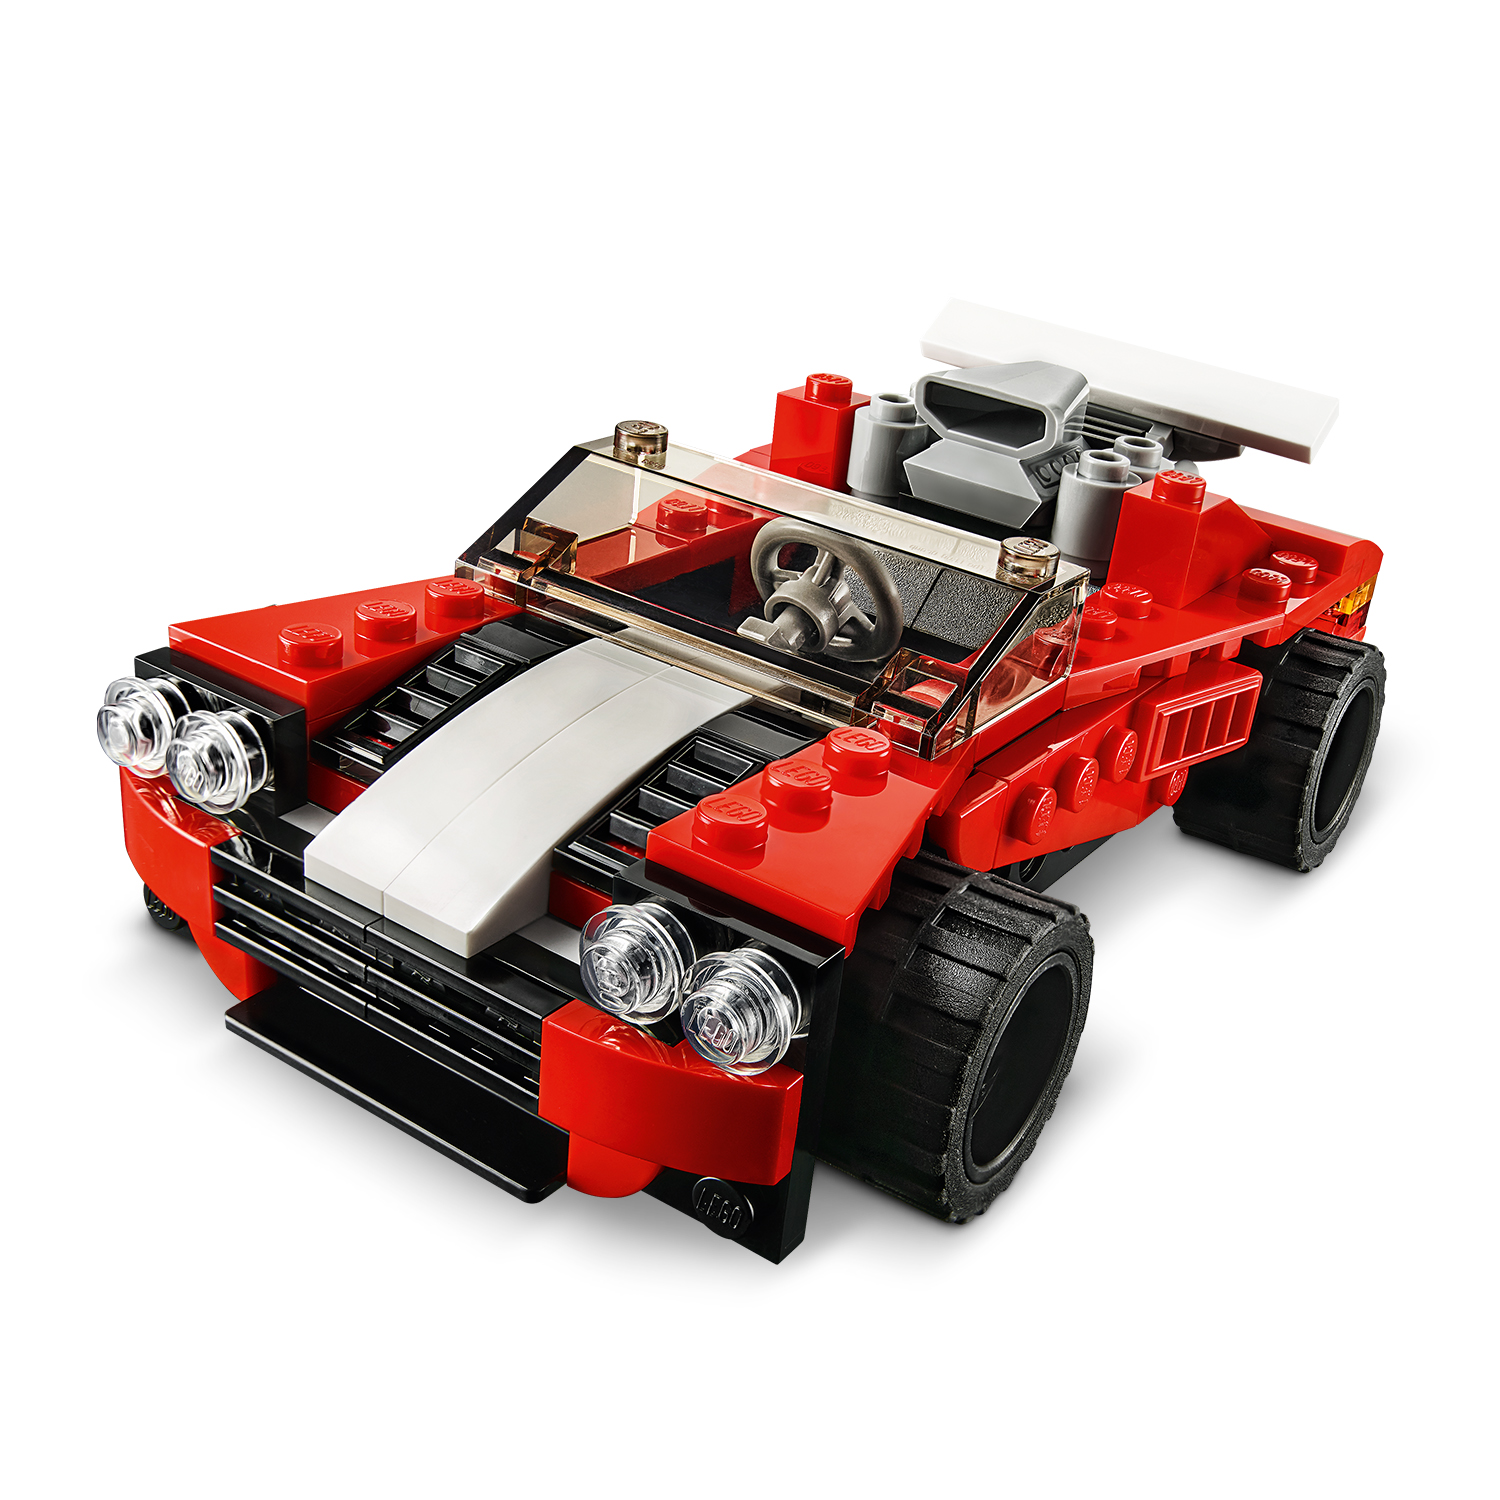 Třikrát více stavitelské zábavy s LEGO® kostkami